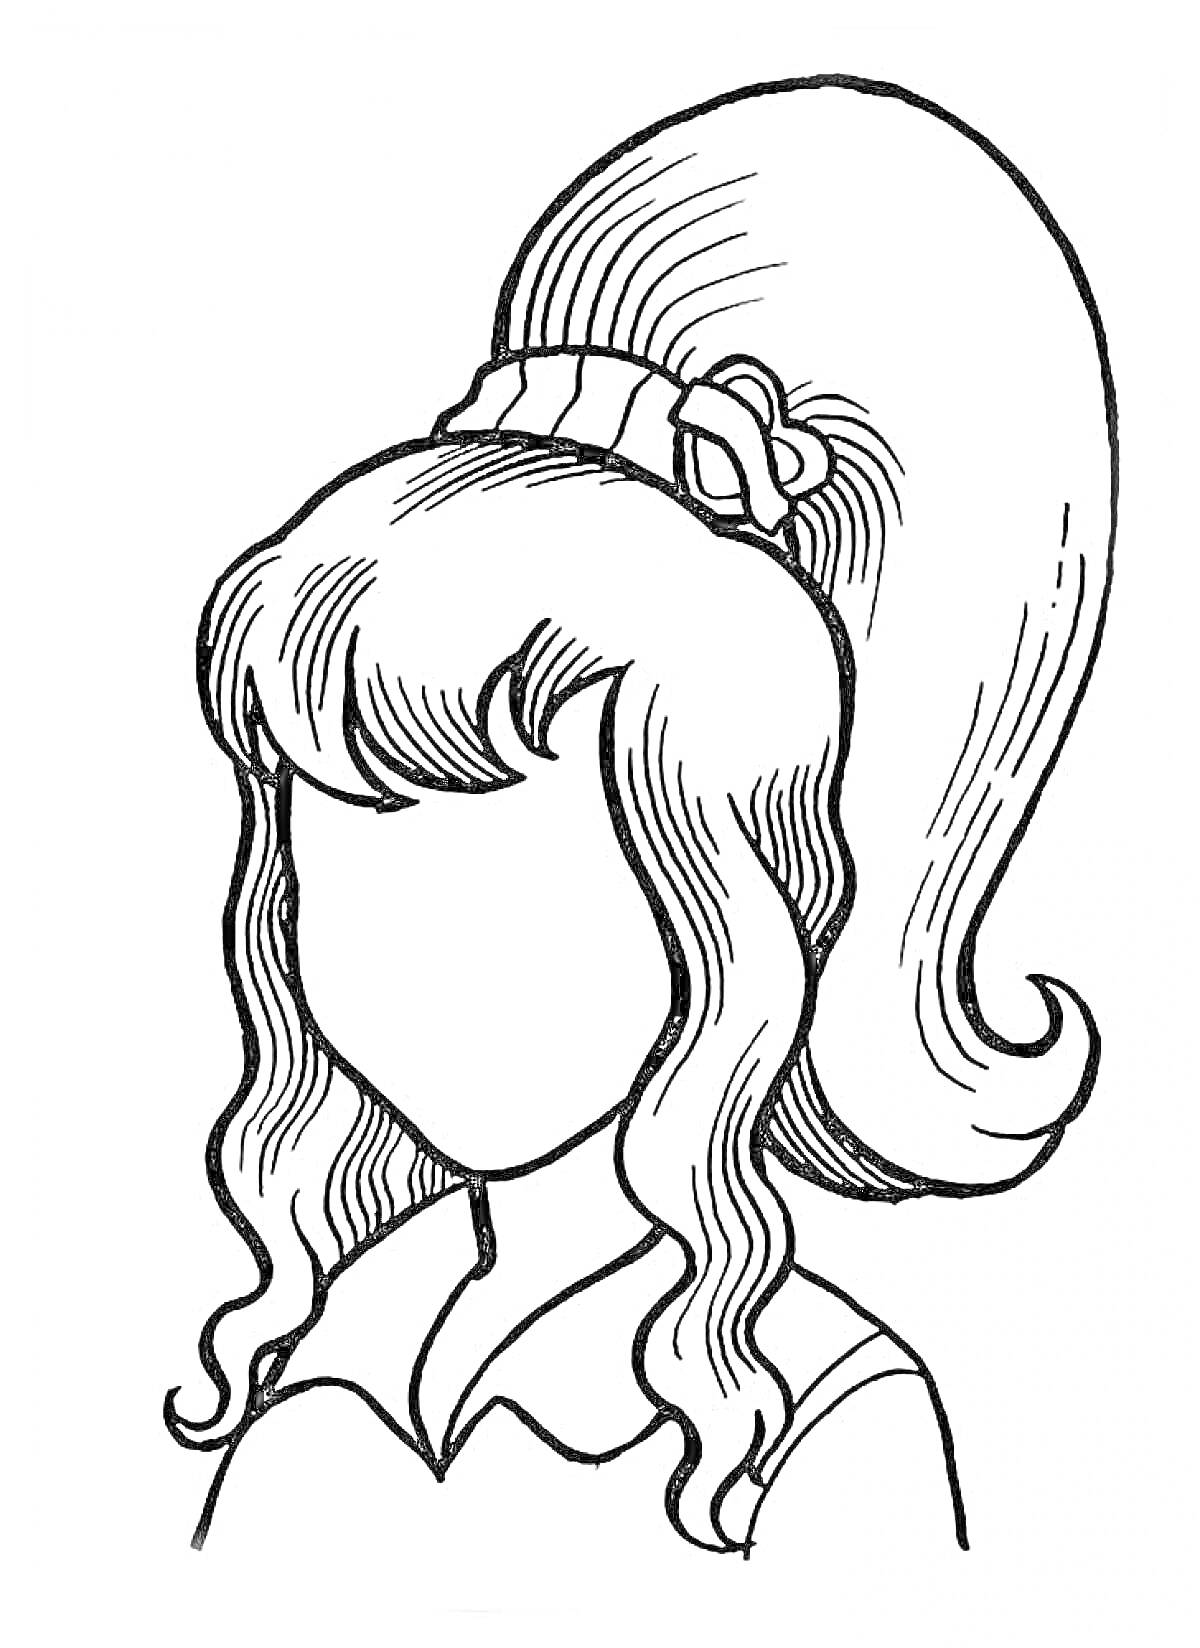 Раскраска Прическа с высоким хвостом и волнистыми локонами, ободок с бантом, воротник рубашки